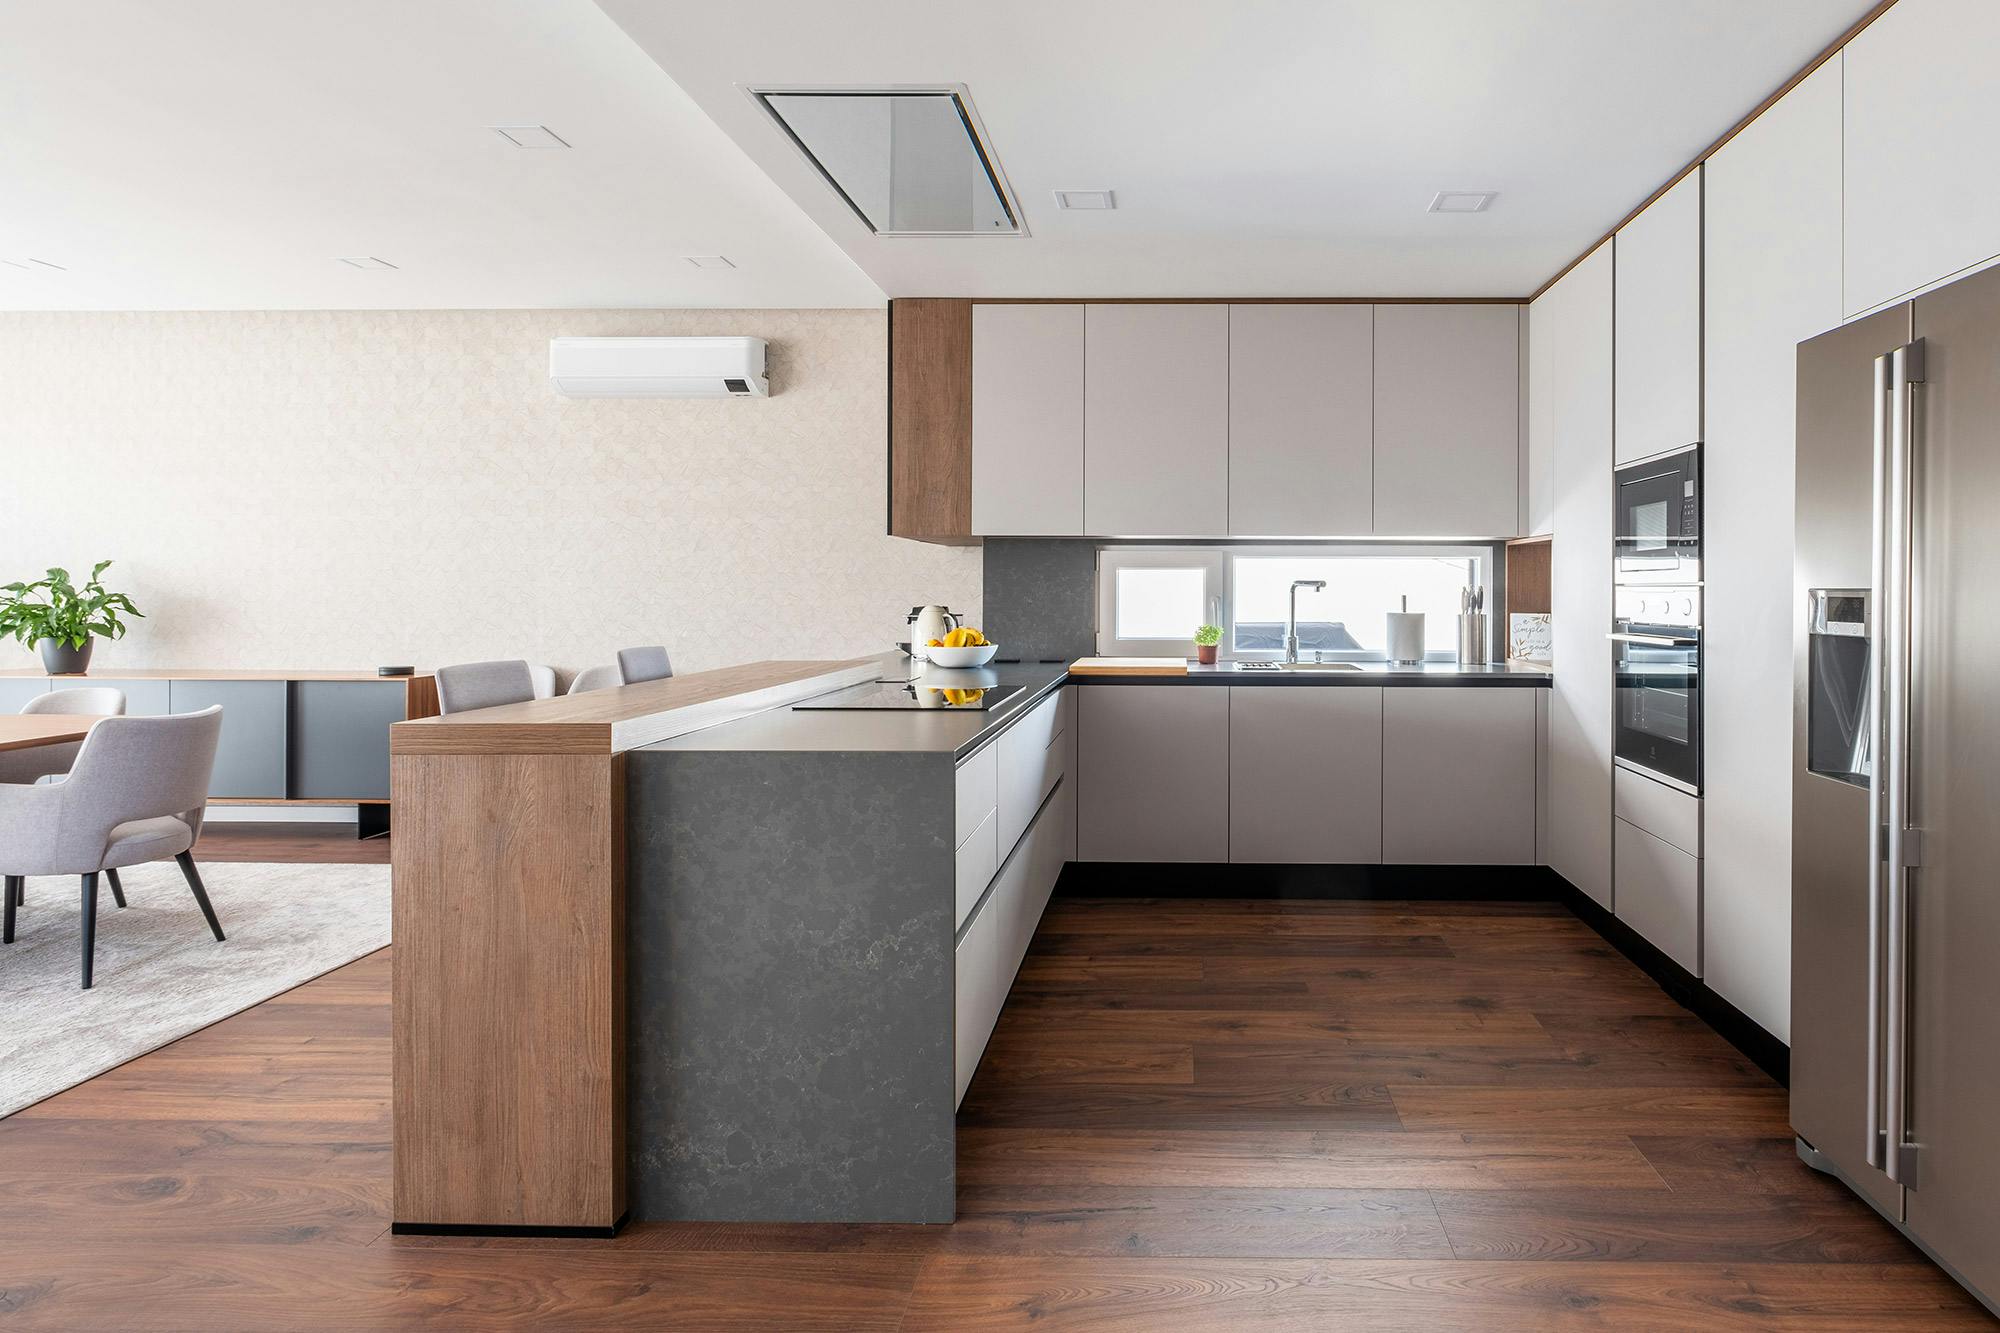 Numero immagine 42 della sezione corrente di Professional features for a domestic kitchen worktop di Cosentino Italia